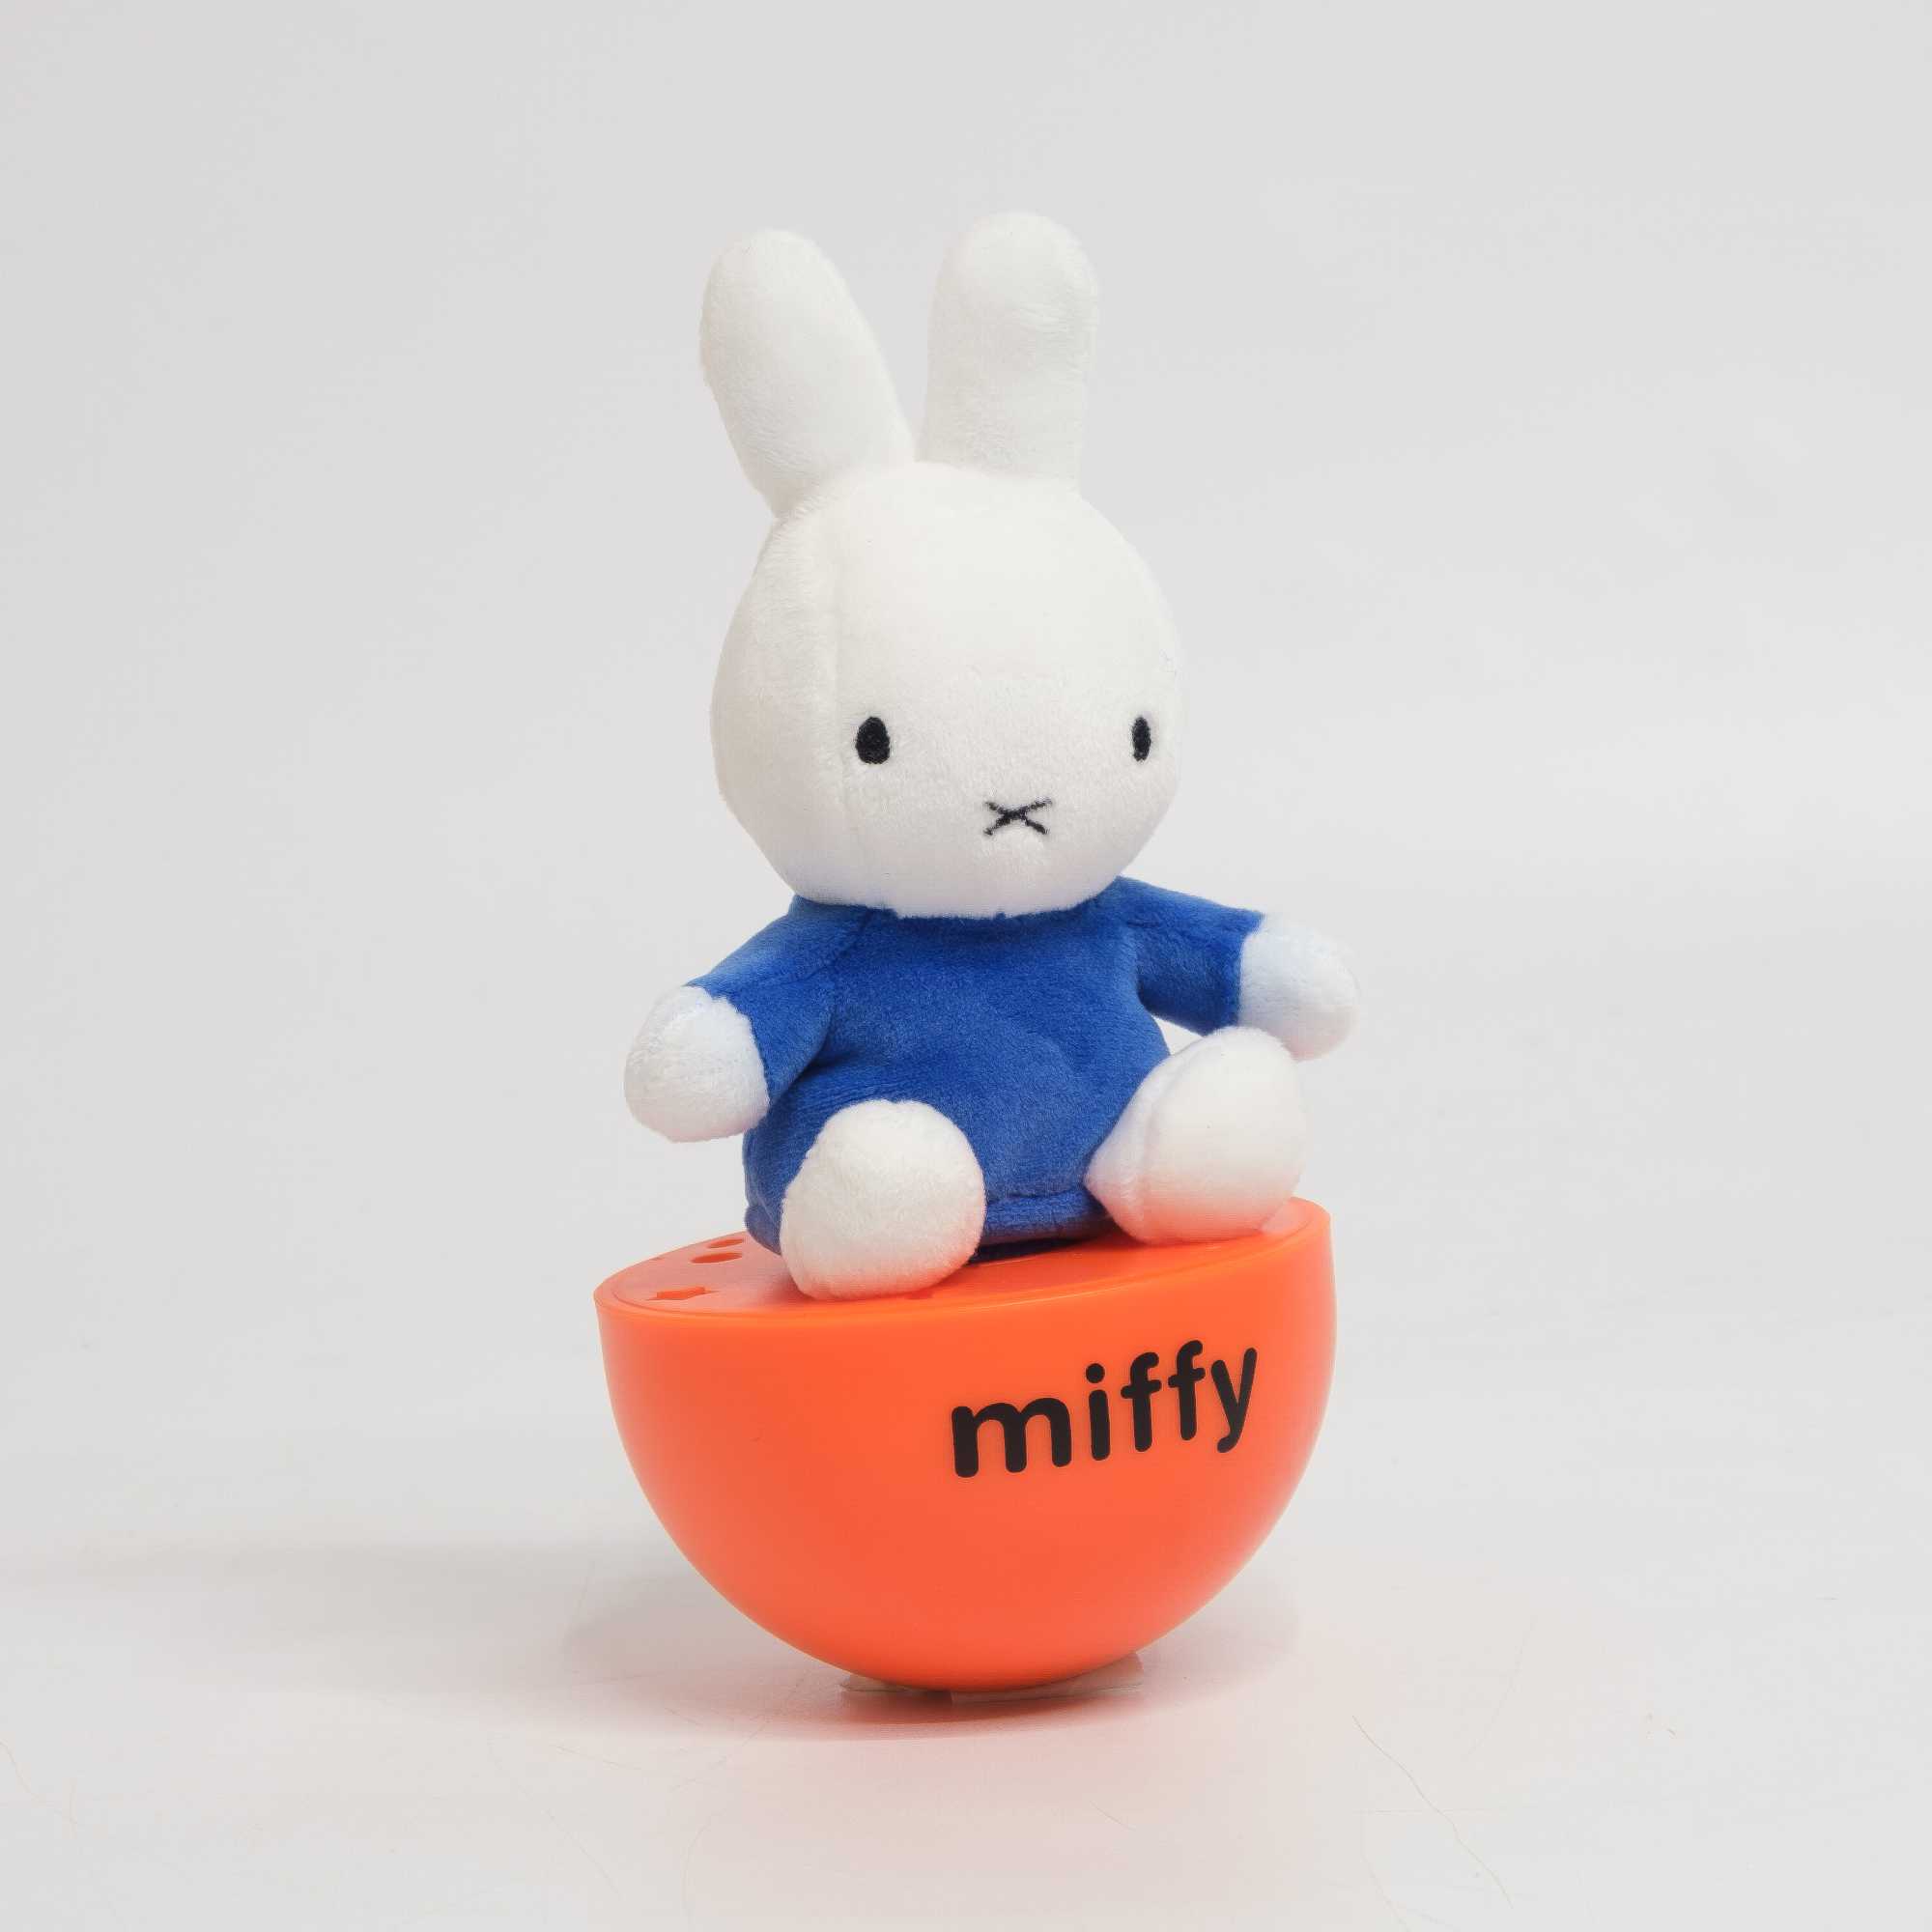 Miffy Plush Tumble Toy